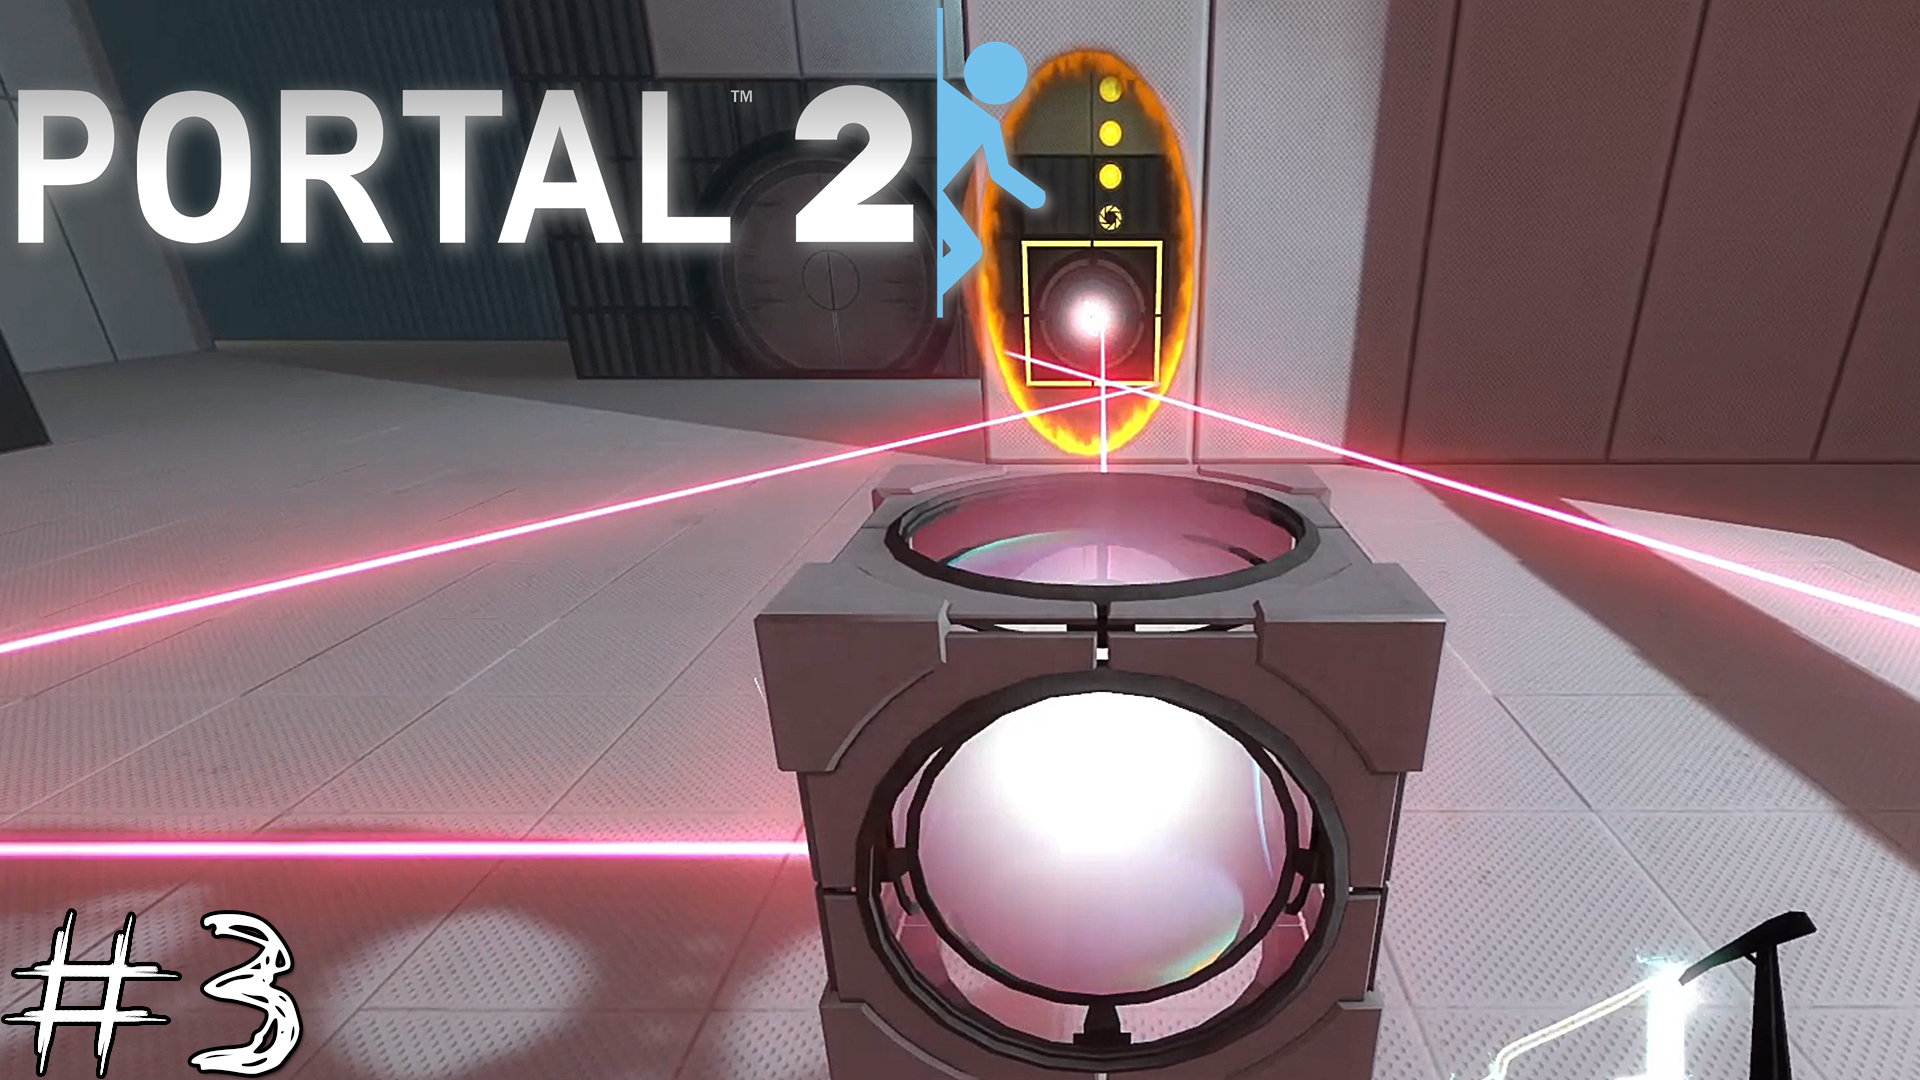 Portal 2 комната с 3 лазерами фото 93